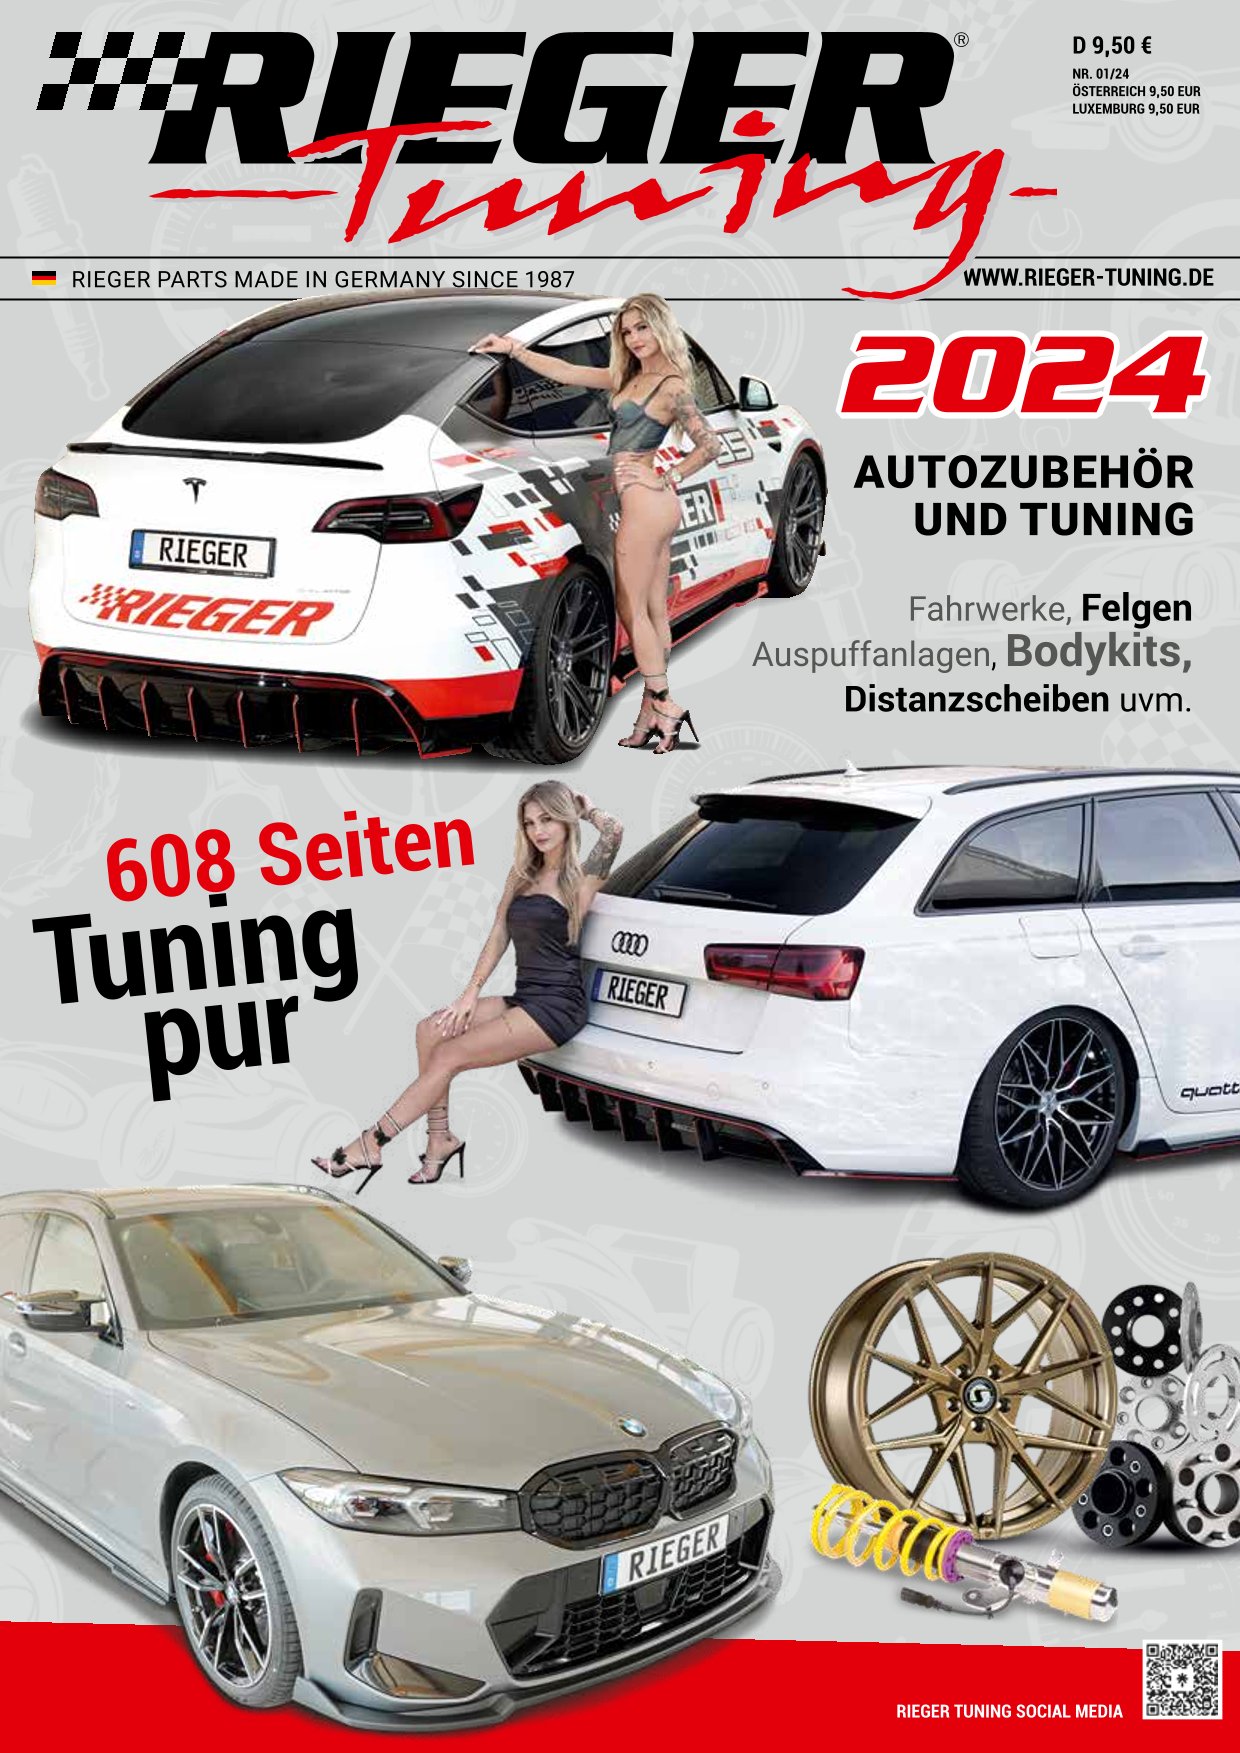 RIEGER Tuning Katalog 2024 Deutsch